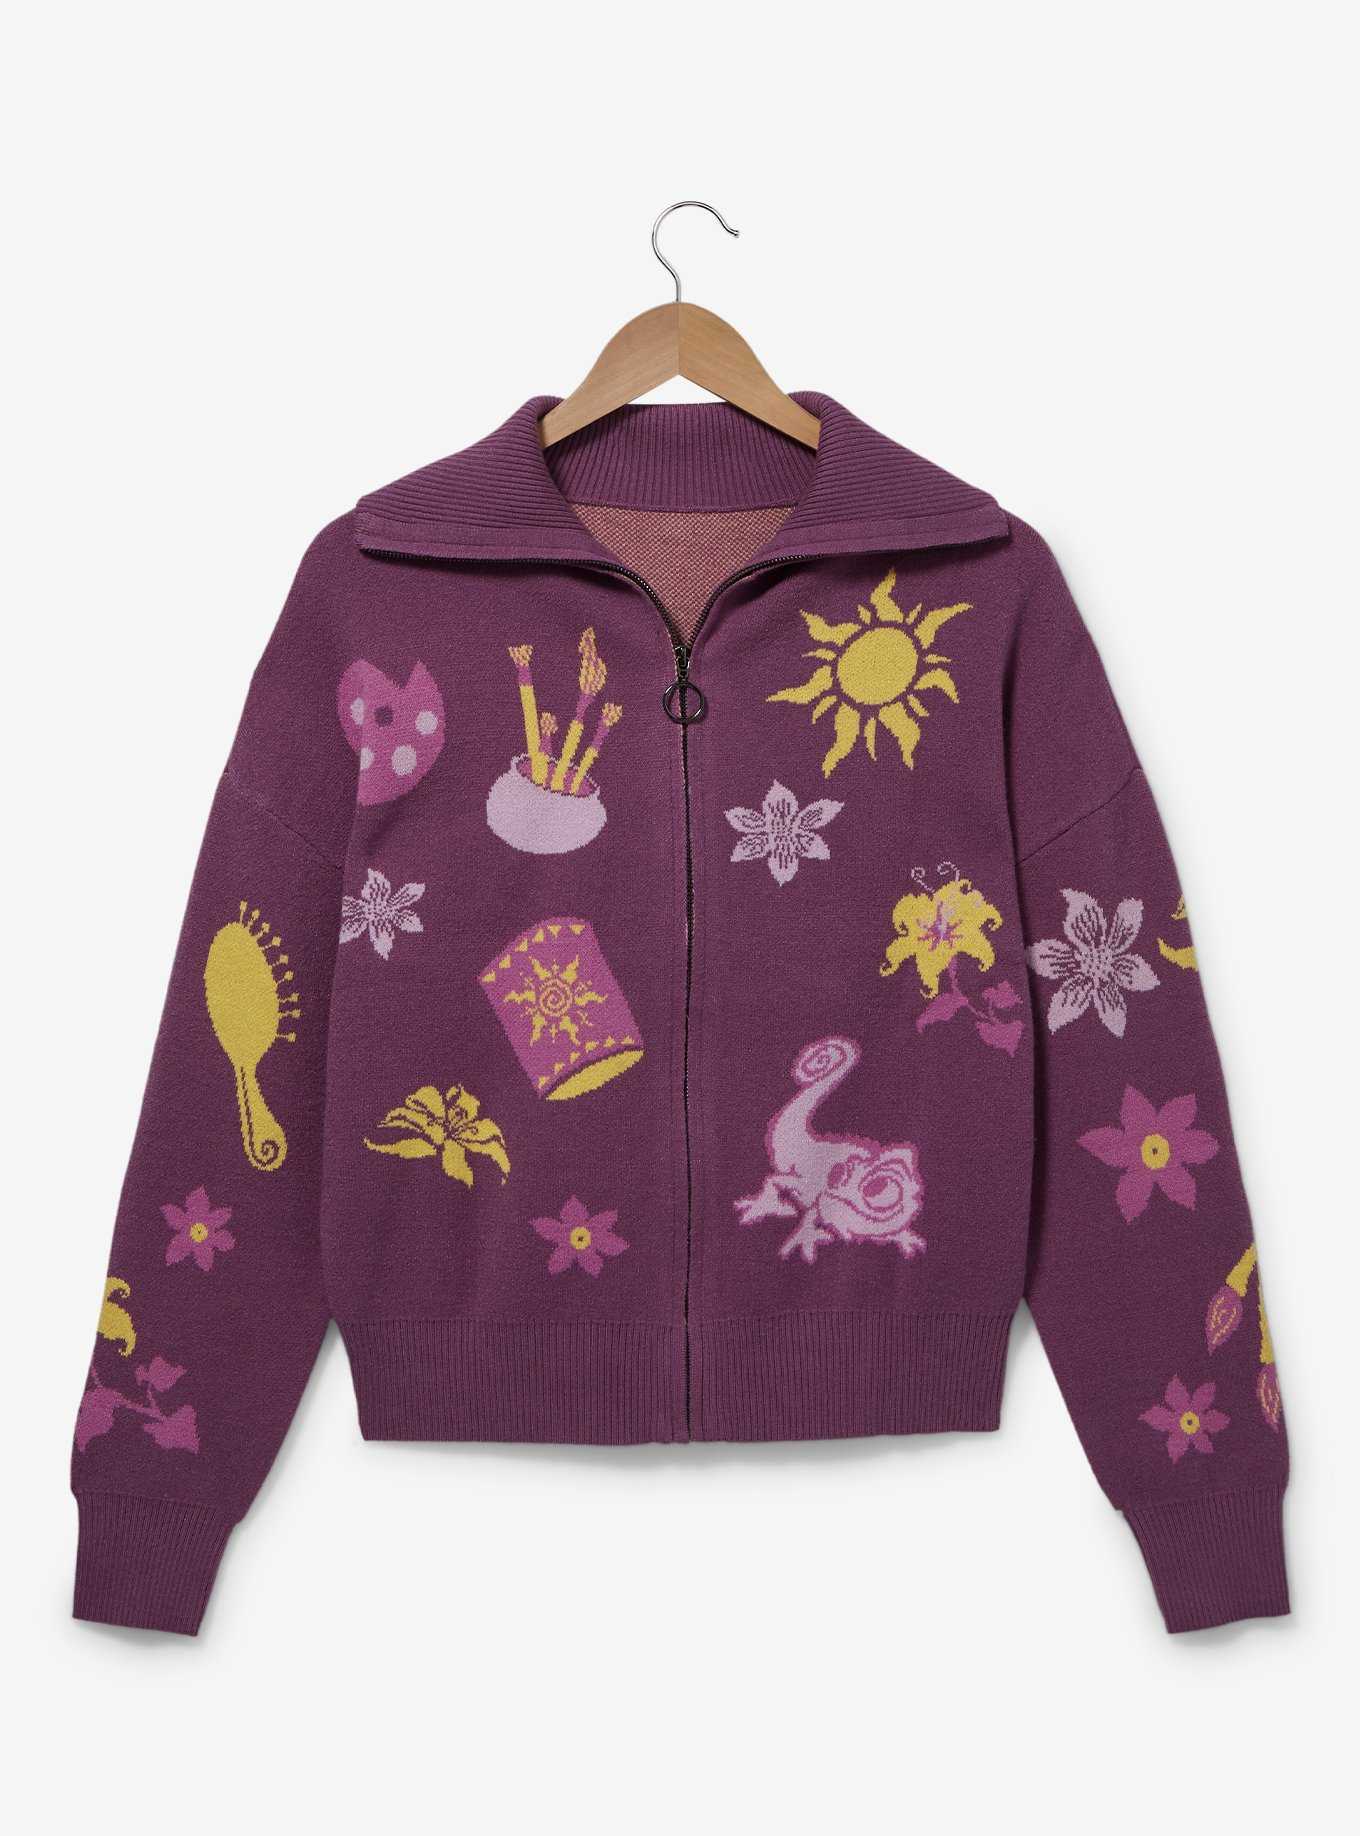 Disney, Tops, Disney Grumpy Embroidered Fleece Zip Up Sweater Size Xl